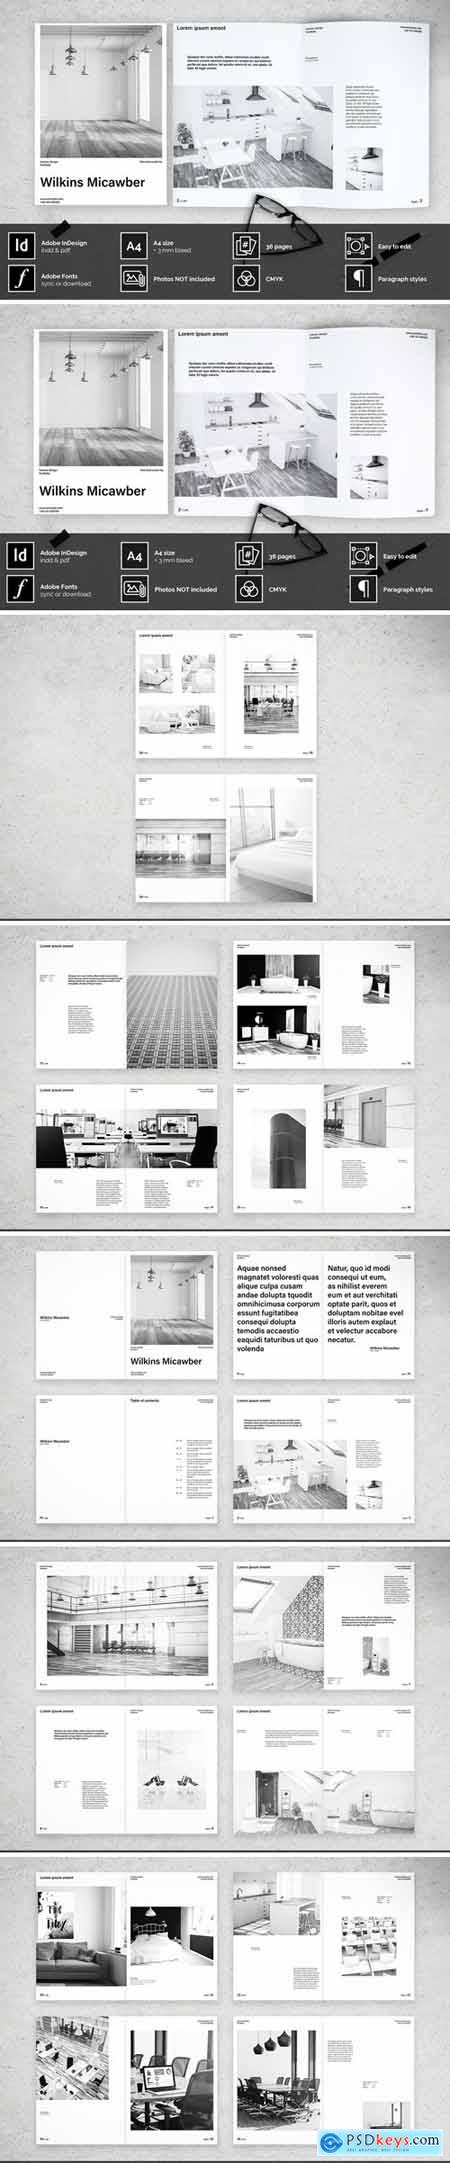 Interior design portfolio